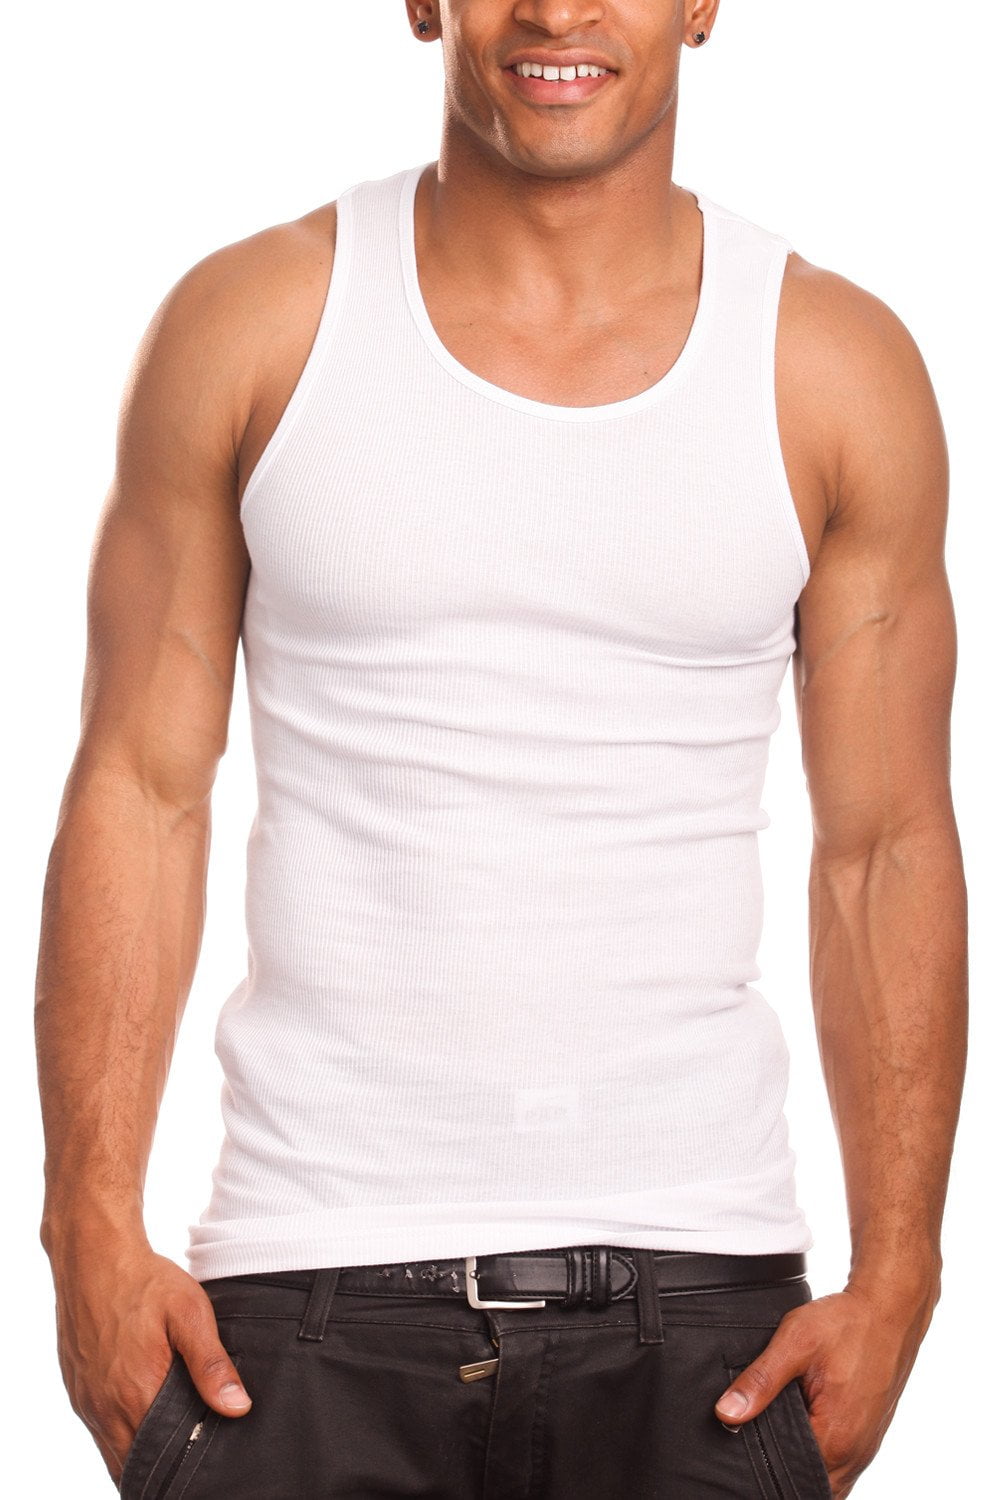 Meer Meetbaar Voorzitter Men's 3 Pack Tank Top A Shirt–100% Cotton Ribbed Undershirt Tee–Assorted &  Sleeveless (White, XX-Large) - Walmart.com